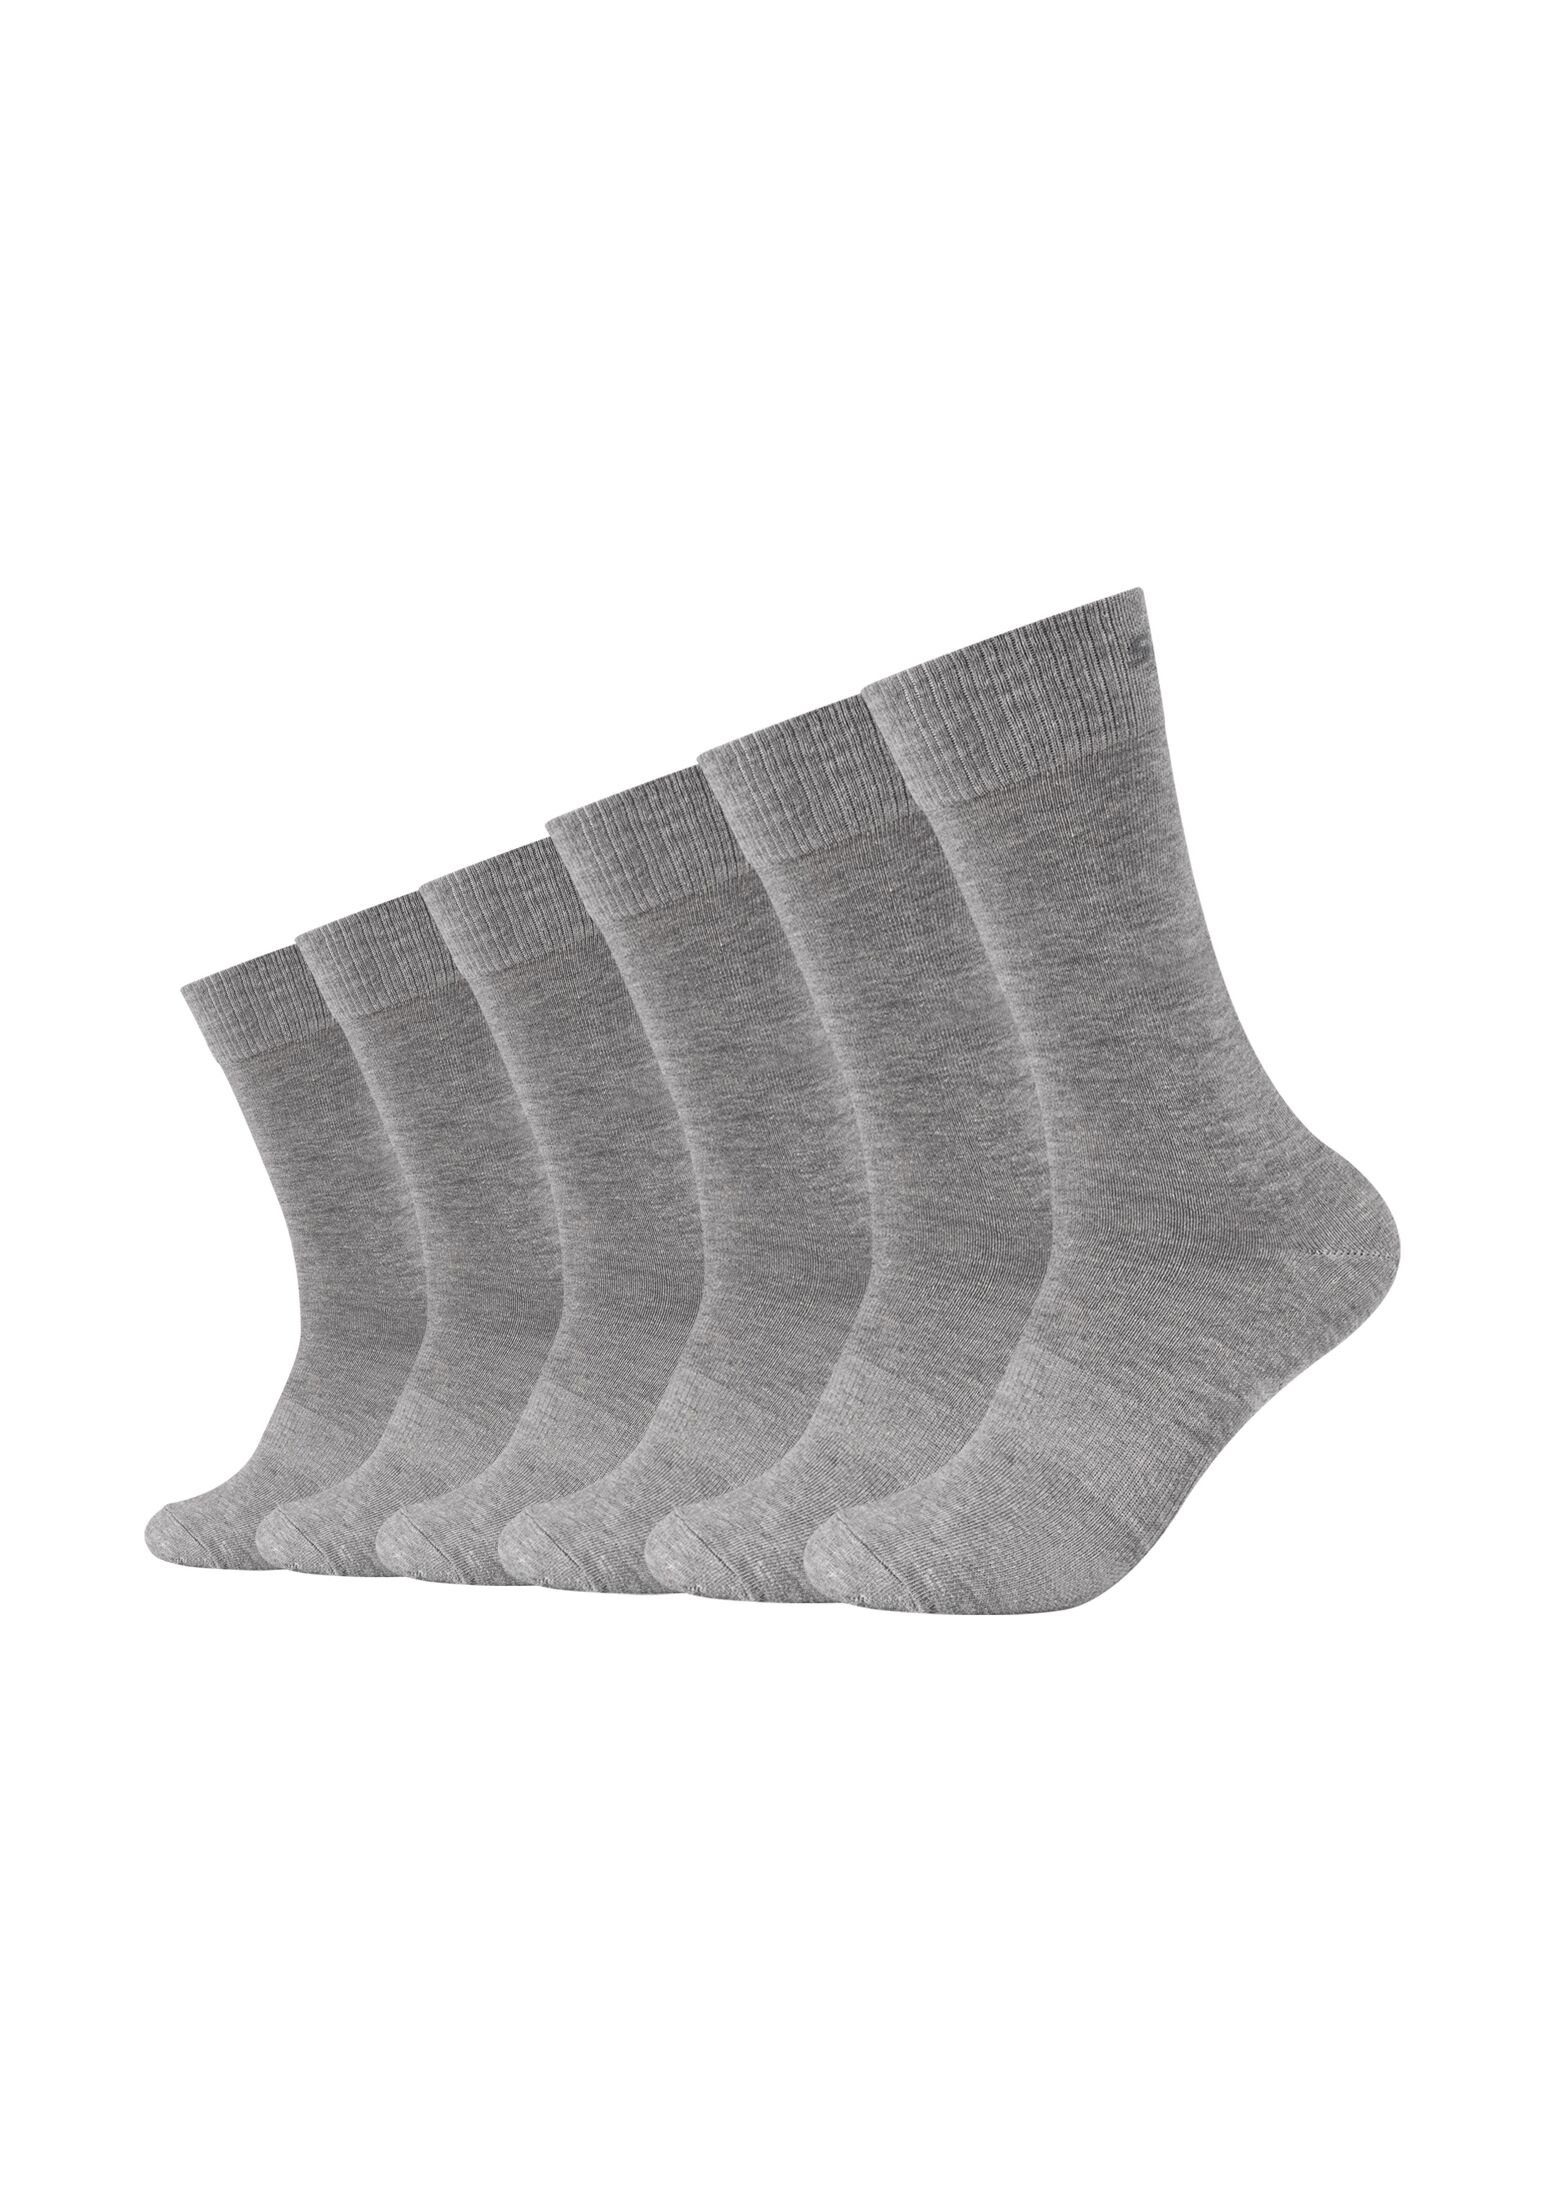 Skechers Socken Socken 6er Pack light grey melange | 